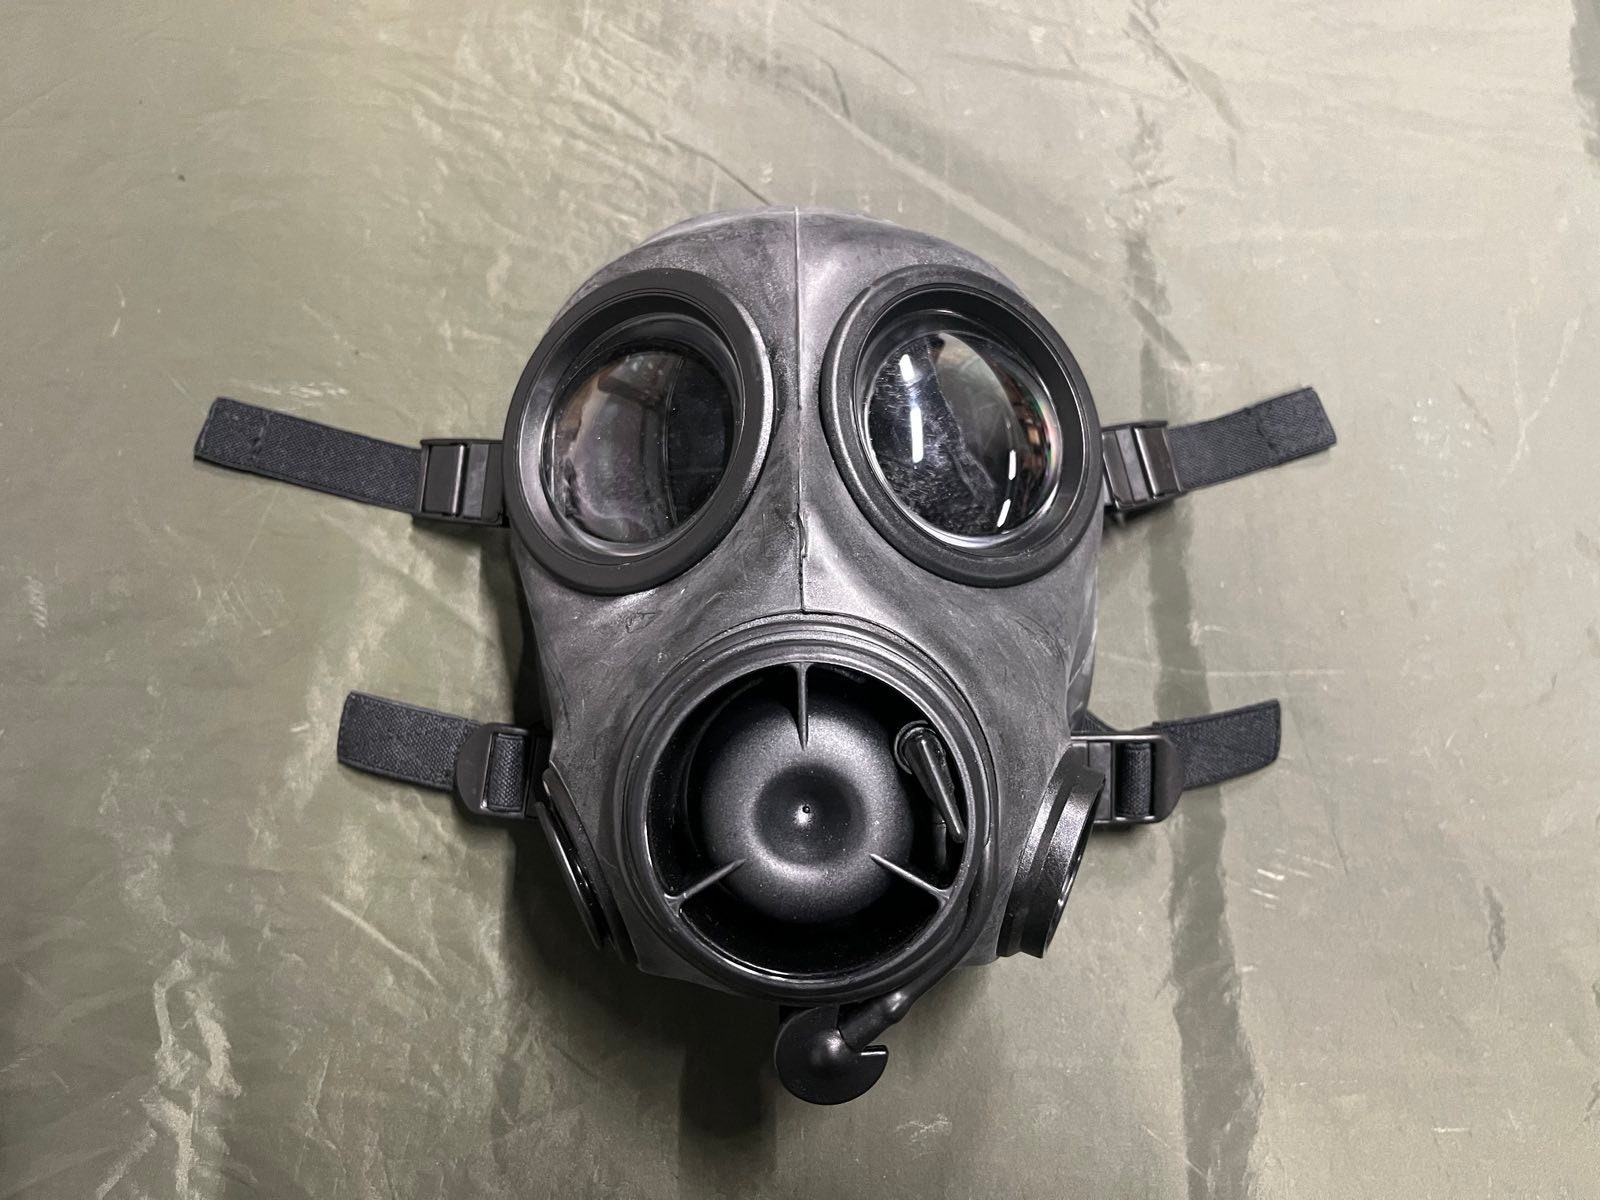 NEW British Army NBC Avon FM12 Respirator Mask Size 2 - Etsy